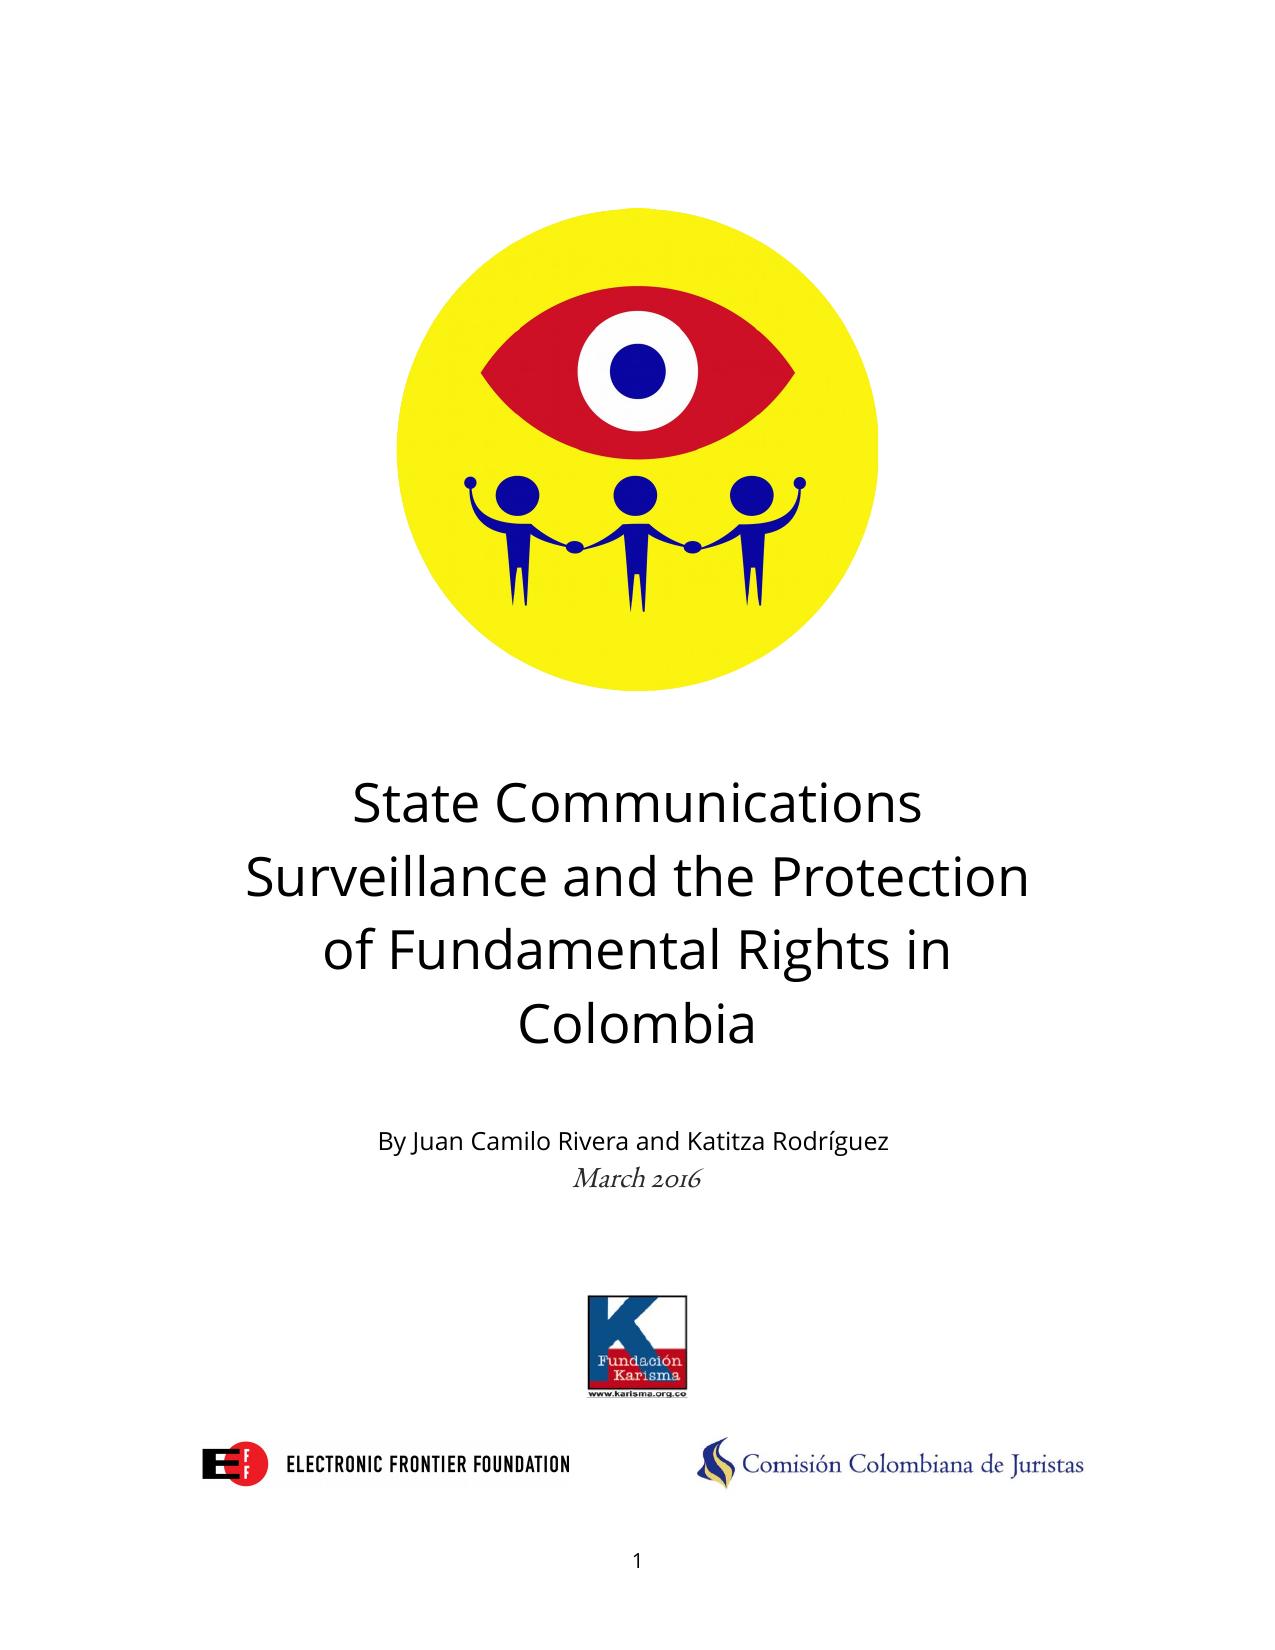 Vigilancia de las comunicaciones por la autoridad y protección de los derechos fundamentales en Colombia